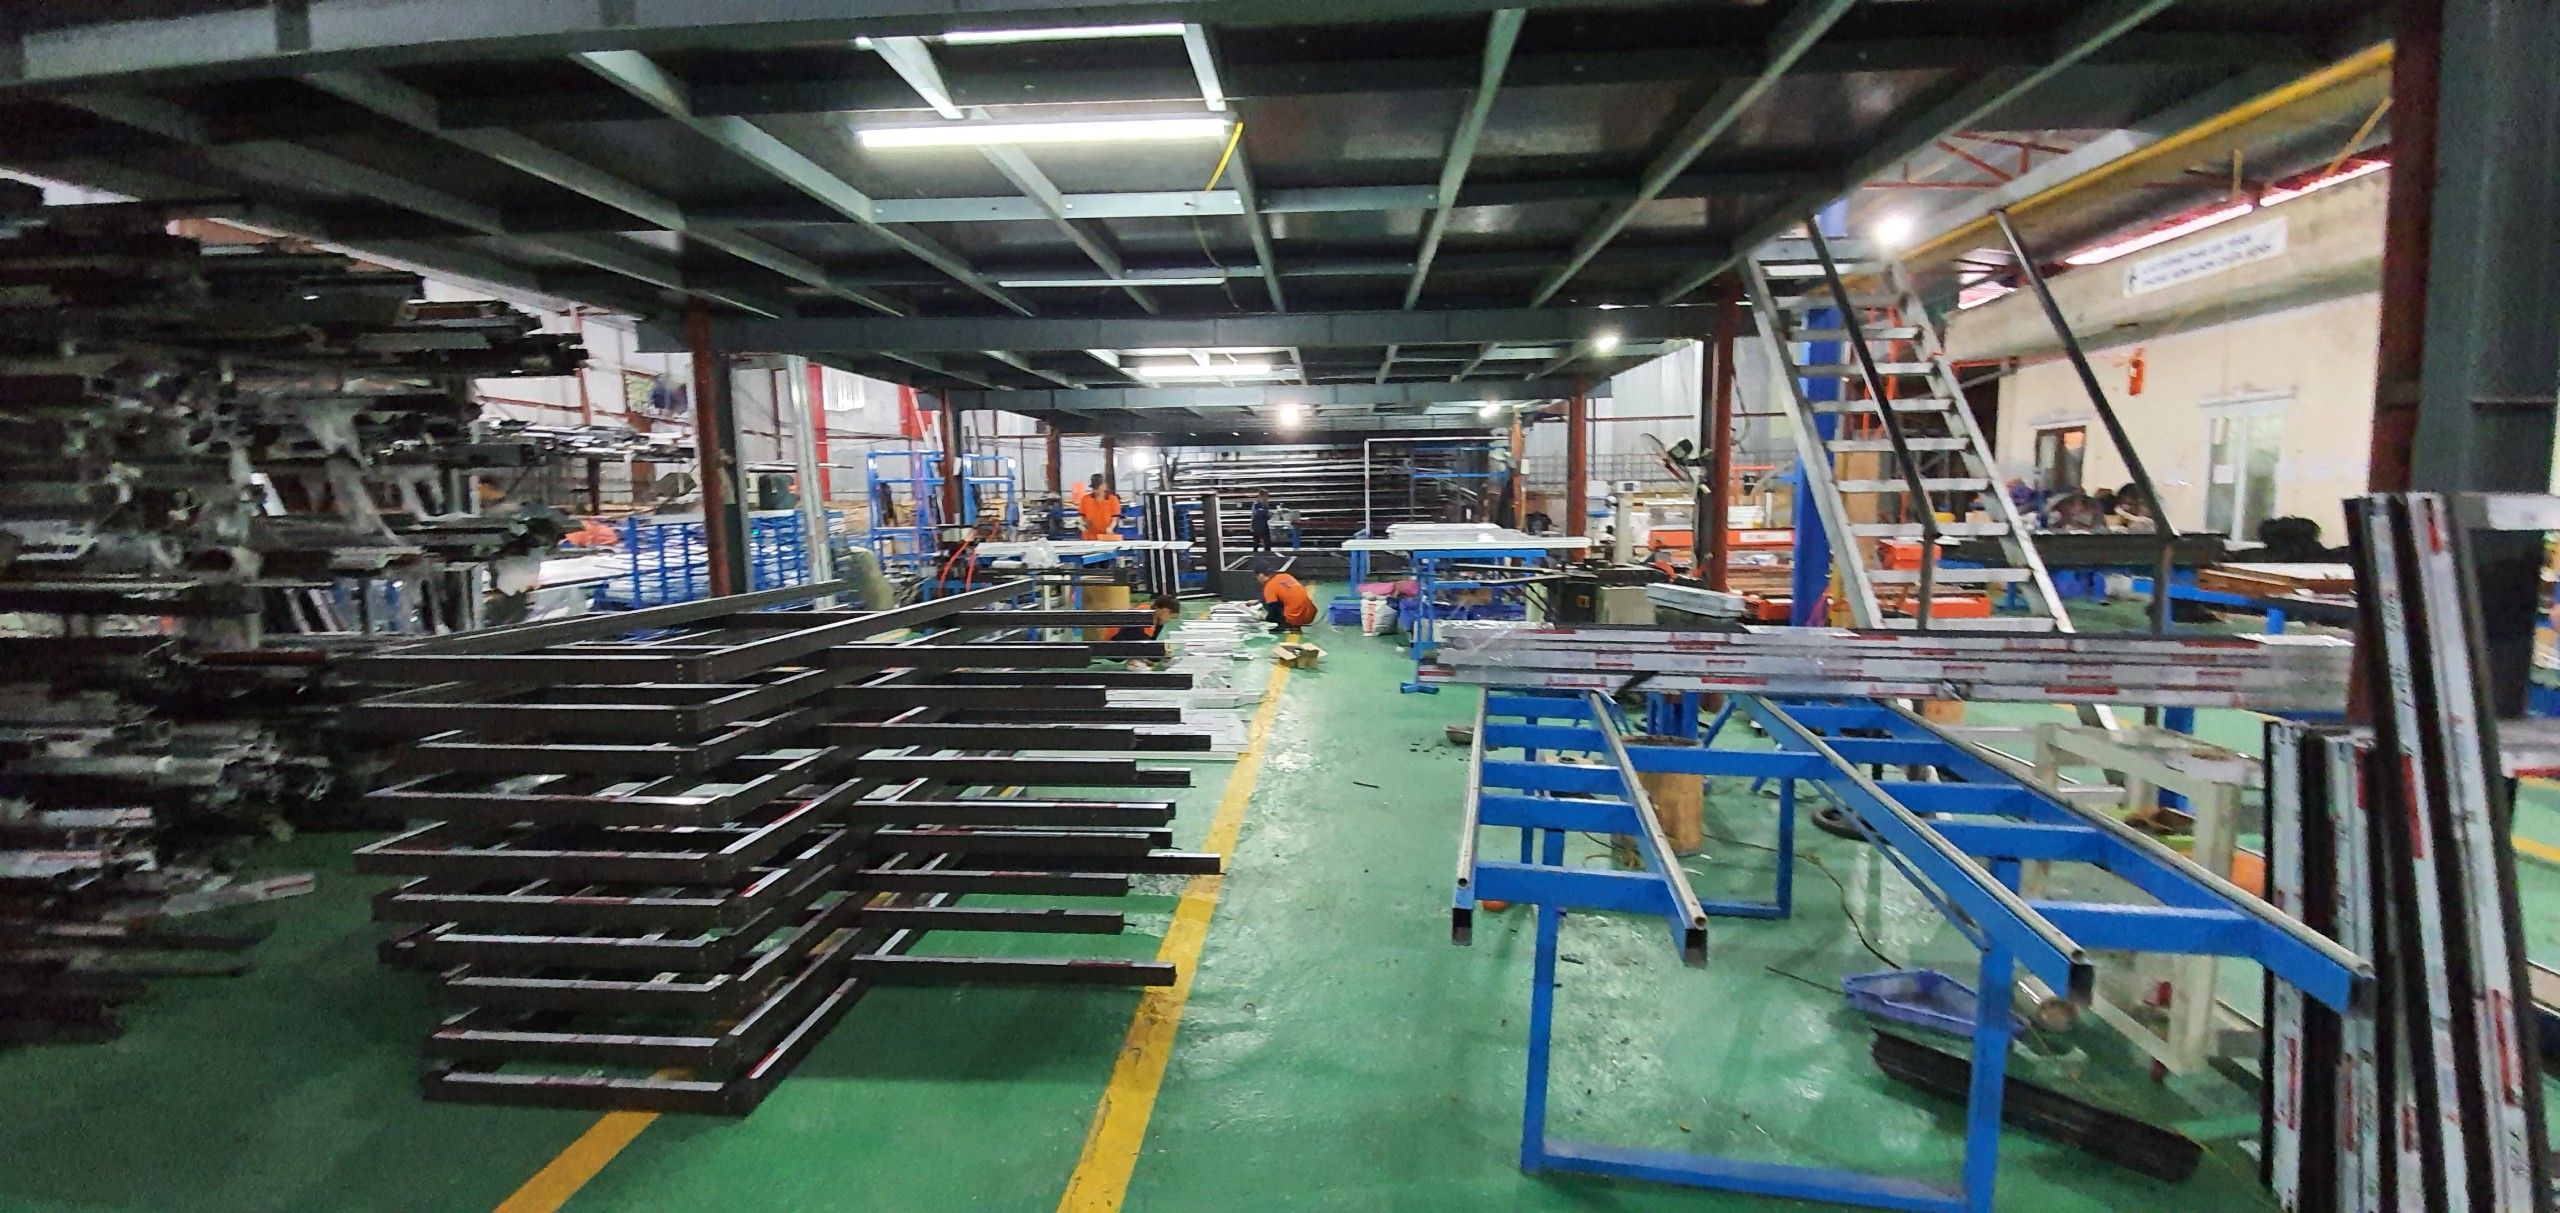 hình ảnh nhà máy sản xuất của hdt group